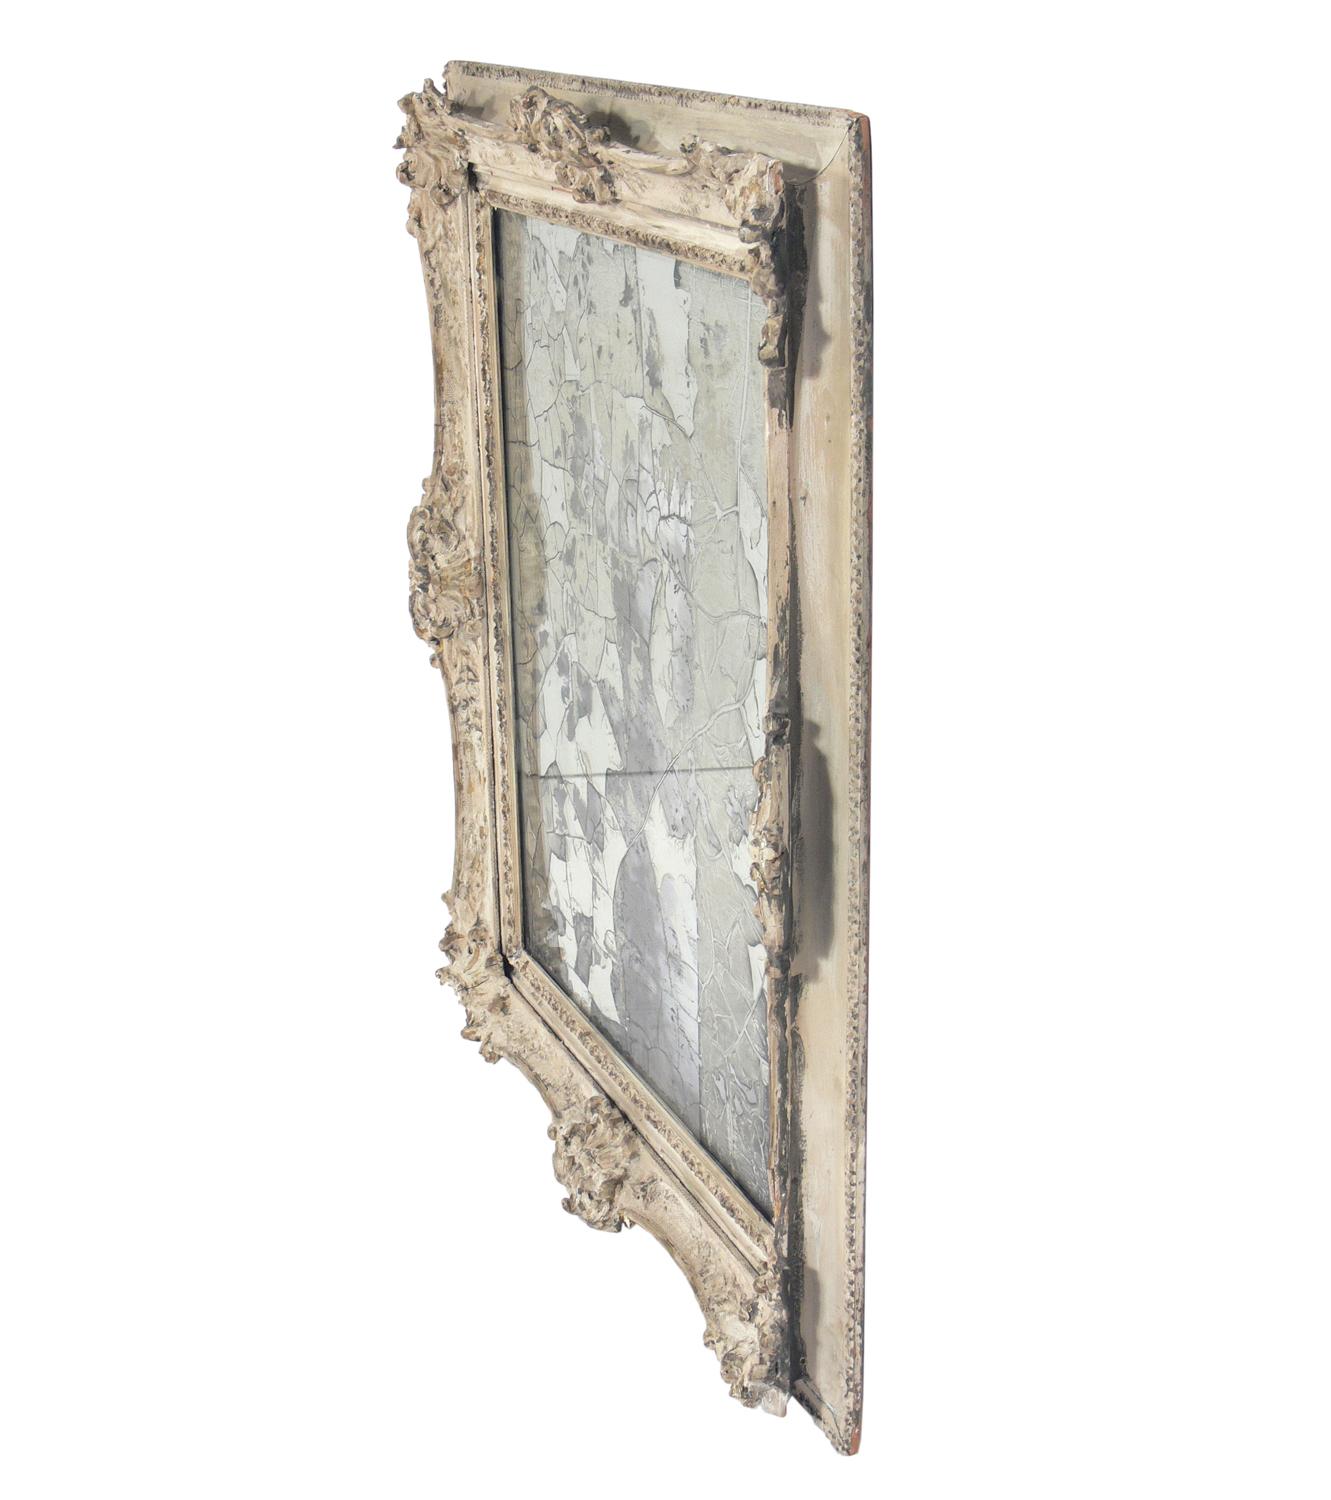 Miroir orné avec argenture originale ultra-dégradée, probablement français, vers les années 1930.